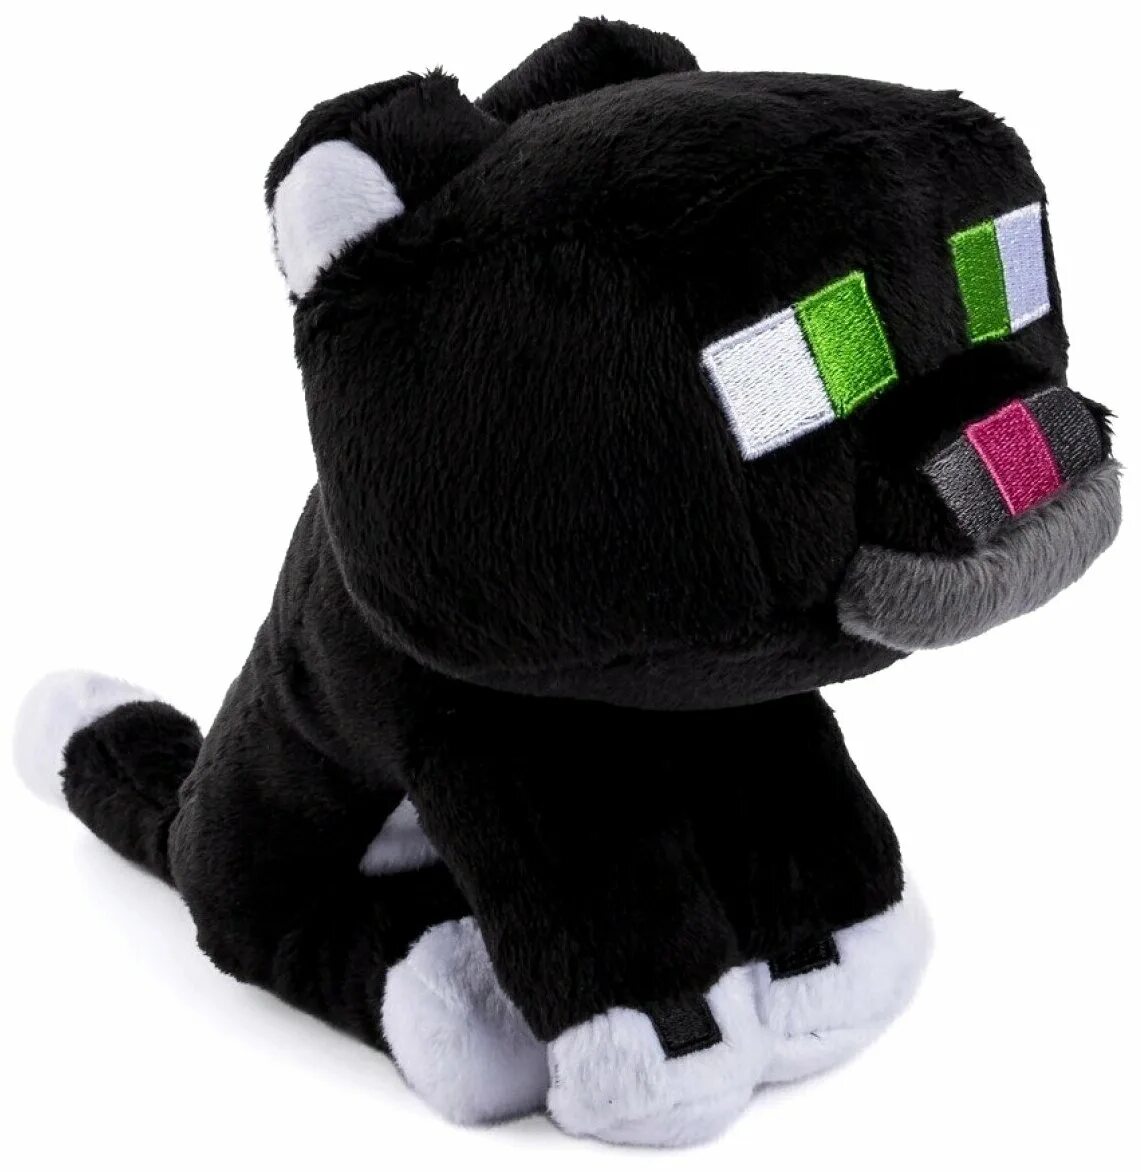 Купить мягкую игрушку майнкрафт. Plush Toys игрушка мягконабивная кот. Плюшевый дымчатый кот Tuxedo Cat. Плюшевый дымчатый кот Tuxedo Cat 23 см майнкрафт. Мягкие игрушки из МАЙНКРАФТА.